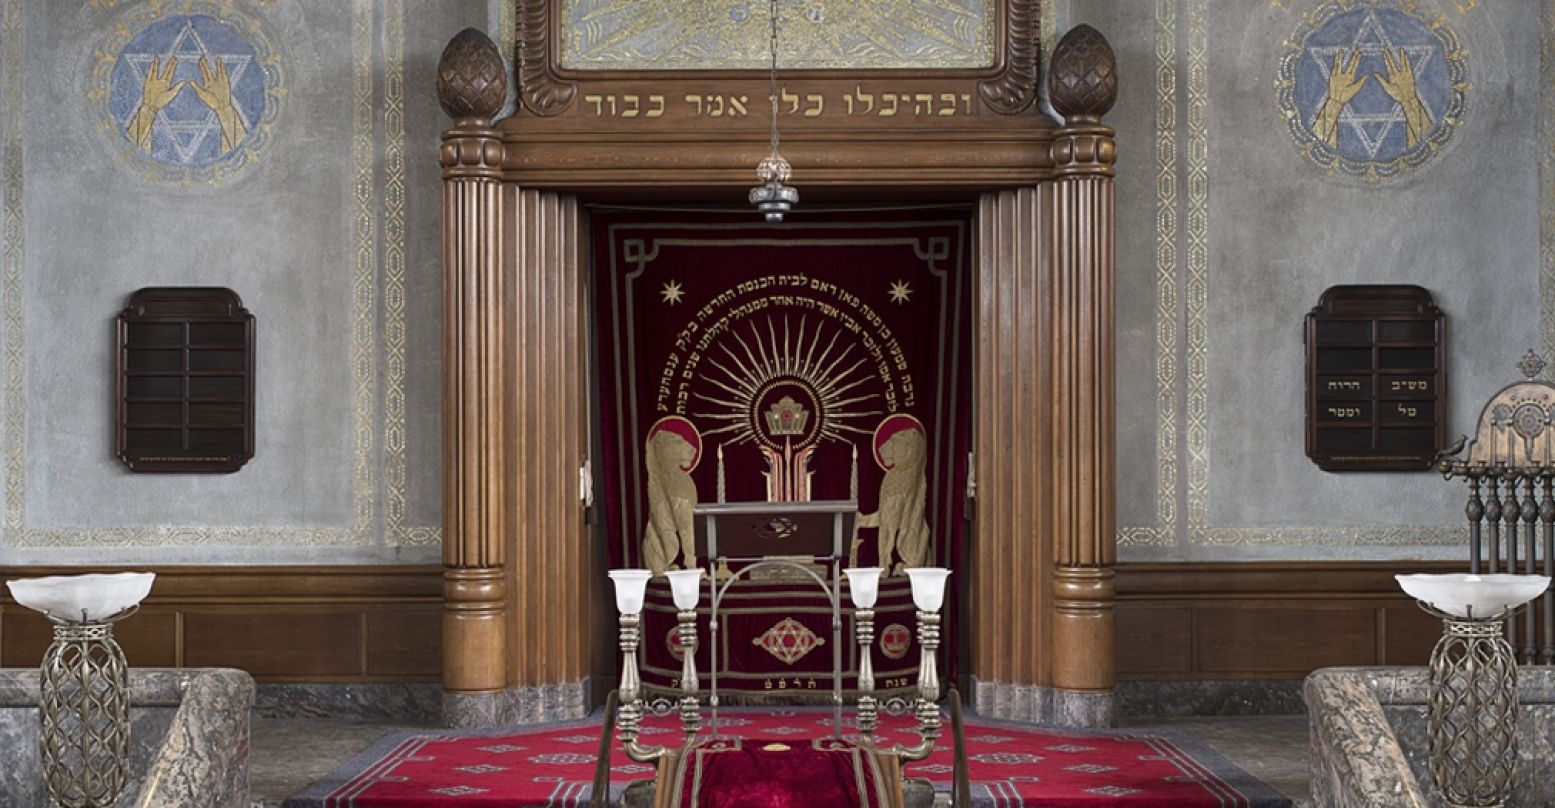 Symbolische mozaïeken, wervelend smeedwerk en prachtige versieringen maken de synagoge in Enschede tot een van de mooiste van Nederland. Foto: Grootste Museum van Nederland © Arjan Bronkhorst